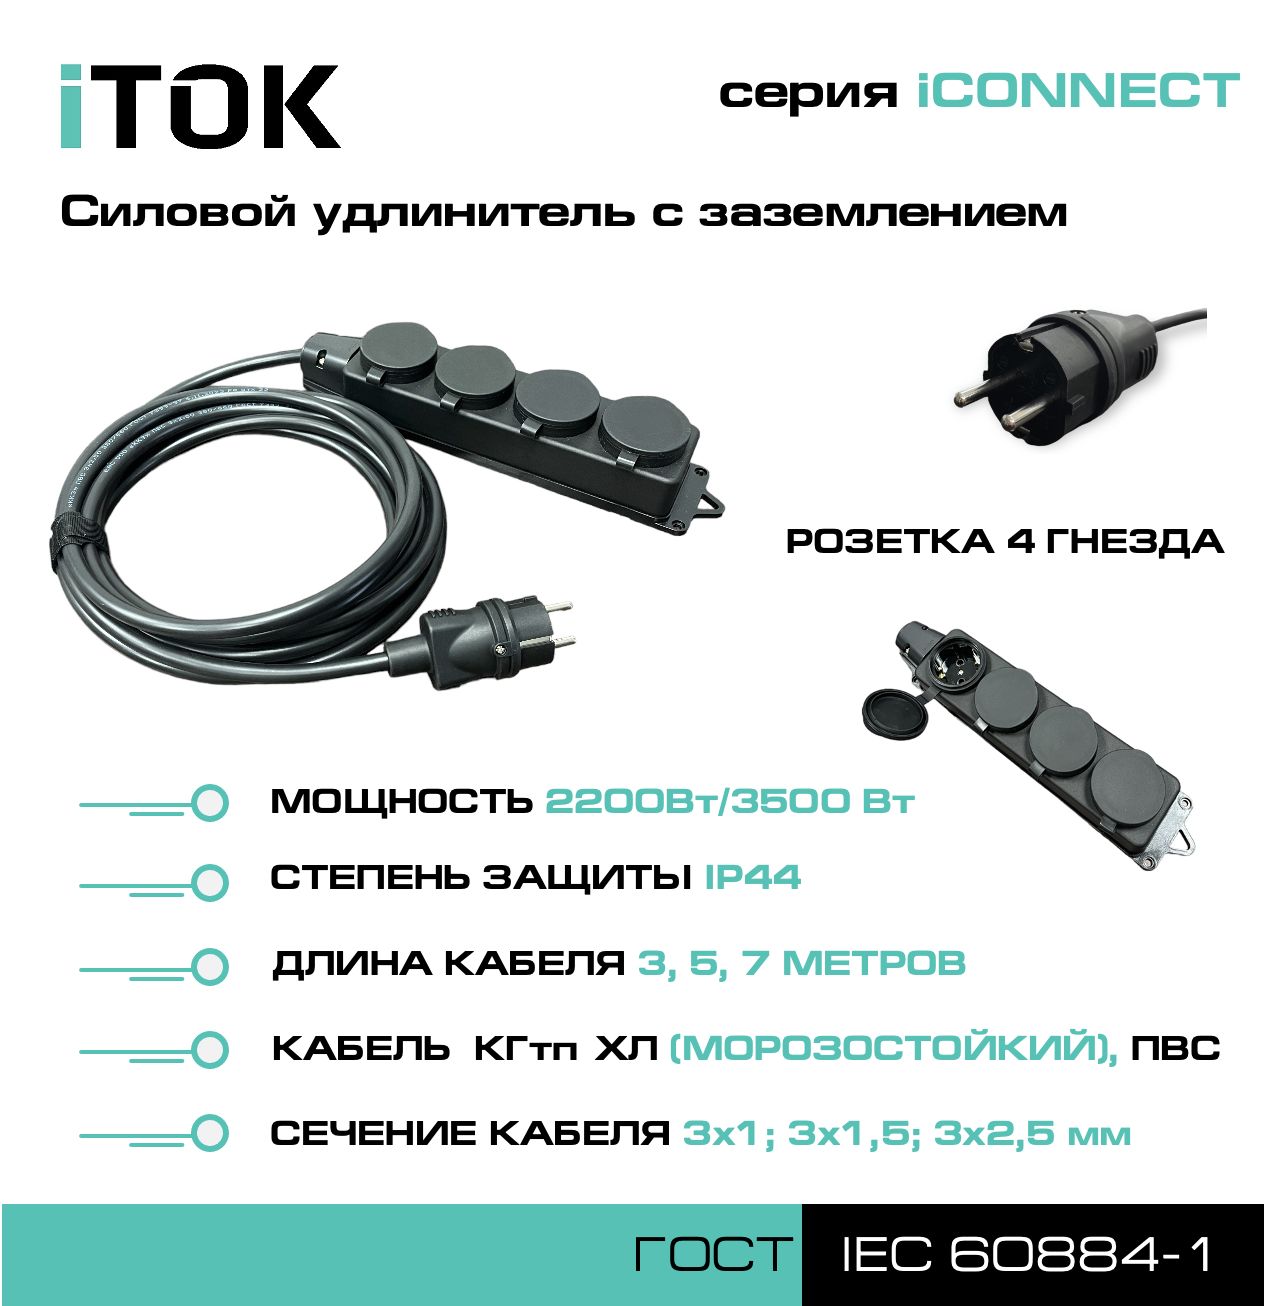 Удлинитель с заземлением серии iTOK iCONNECT ПВС 3х2,5 мм 4 гнезда IP44 3 м